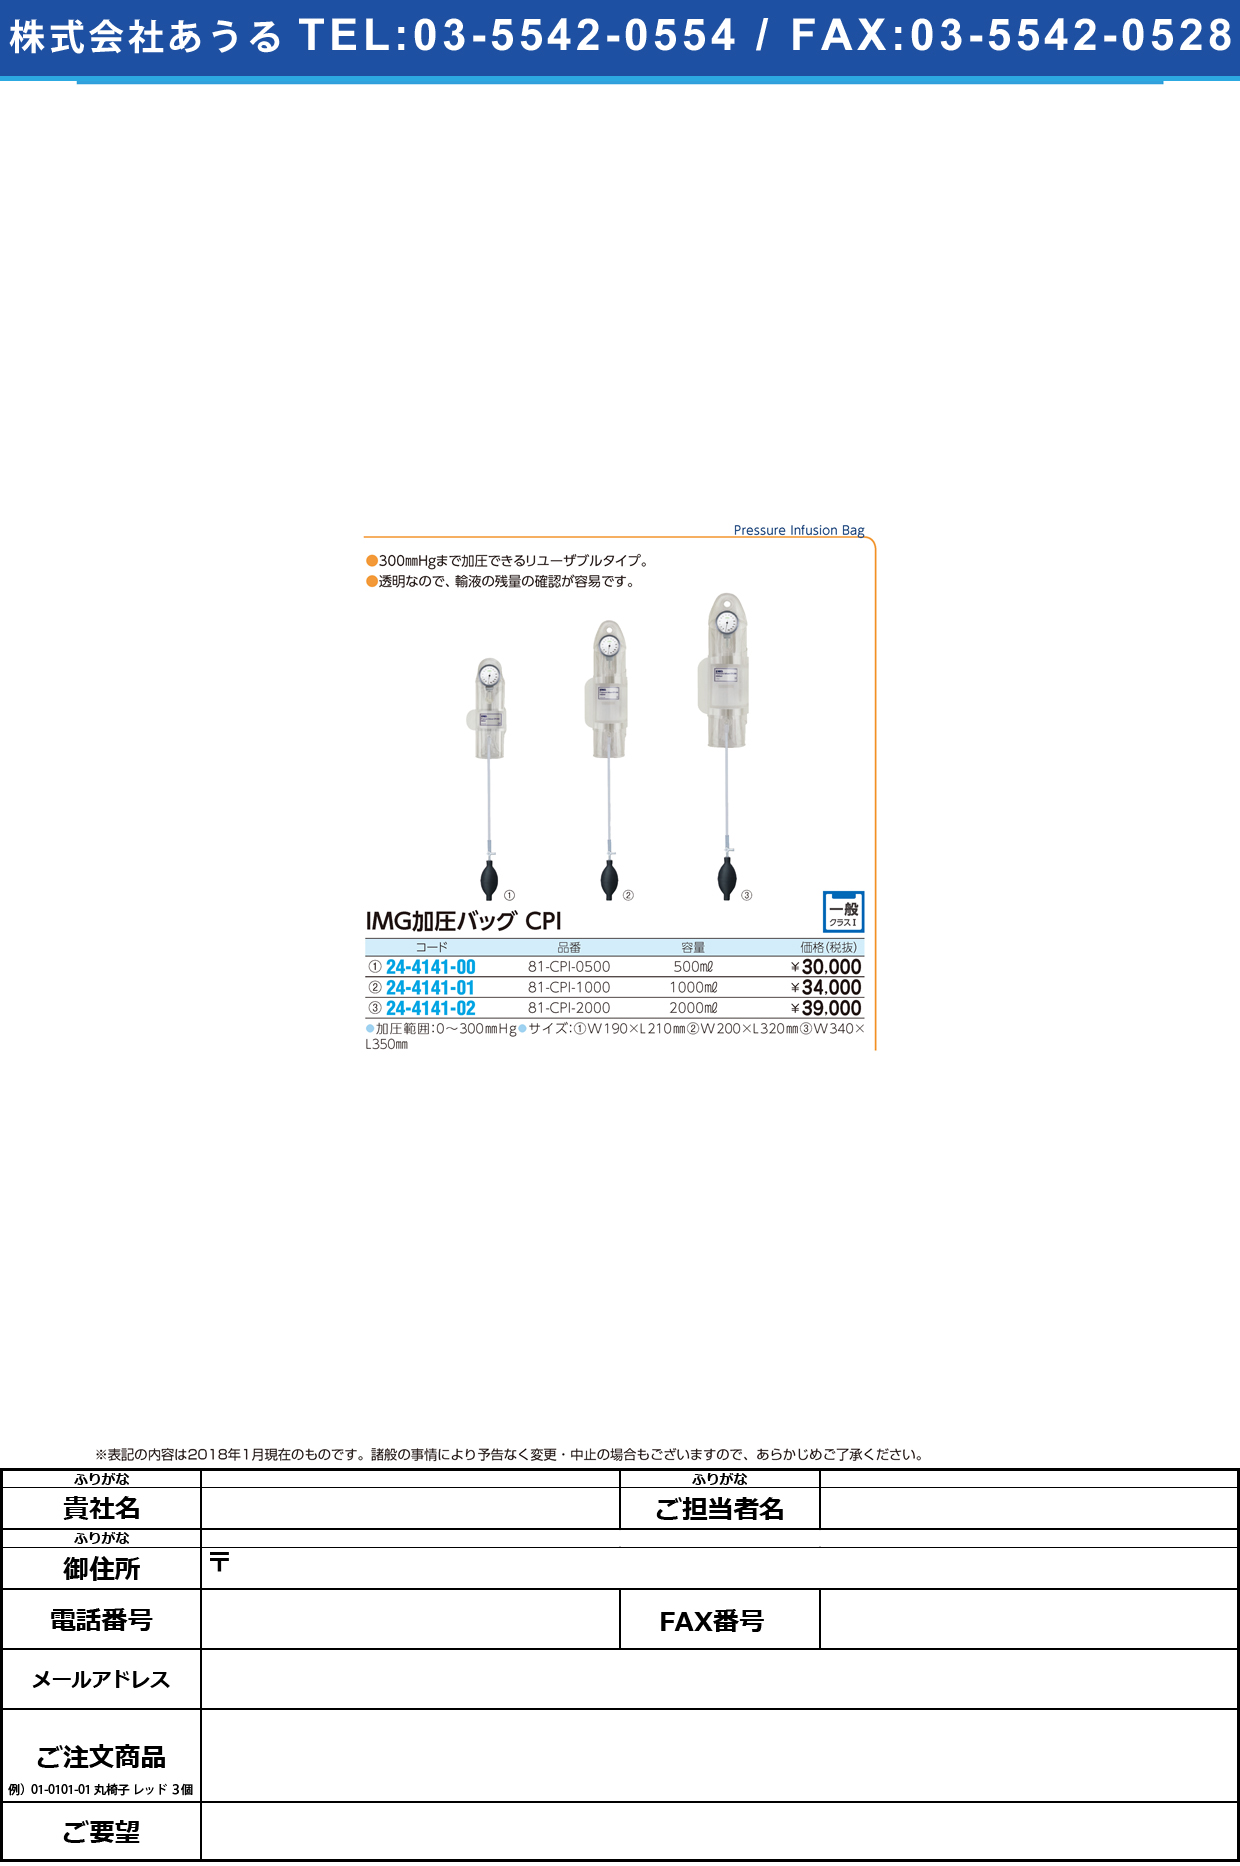 (24-4141-02)ＩＭＧ加圧バッグＣＰＩ 81-CPI-2000 ｶｱﾂﾊﾞｯｸﾞ【1台単位】【2018年カタログ商品】